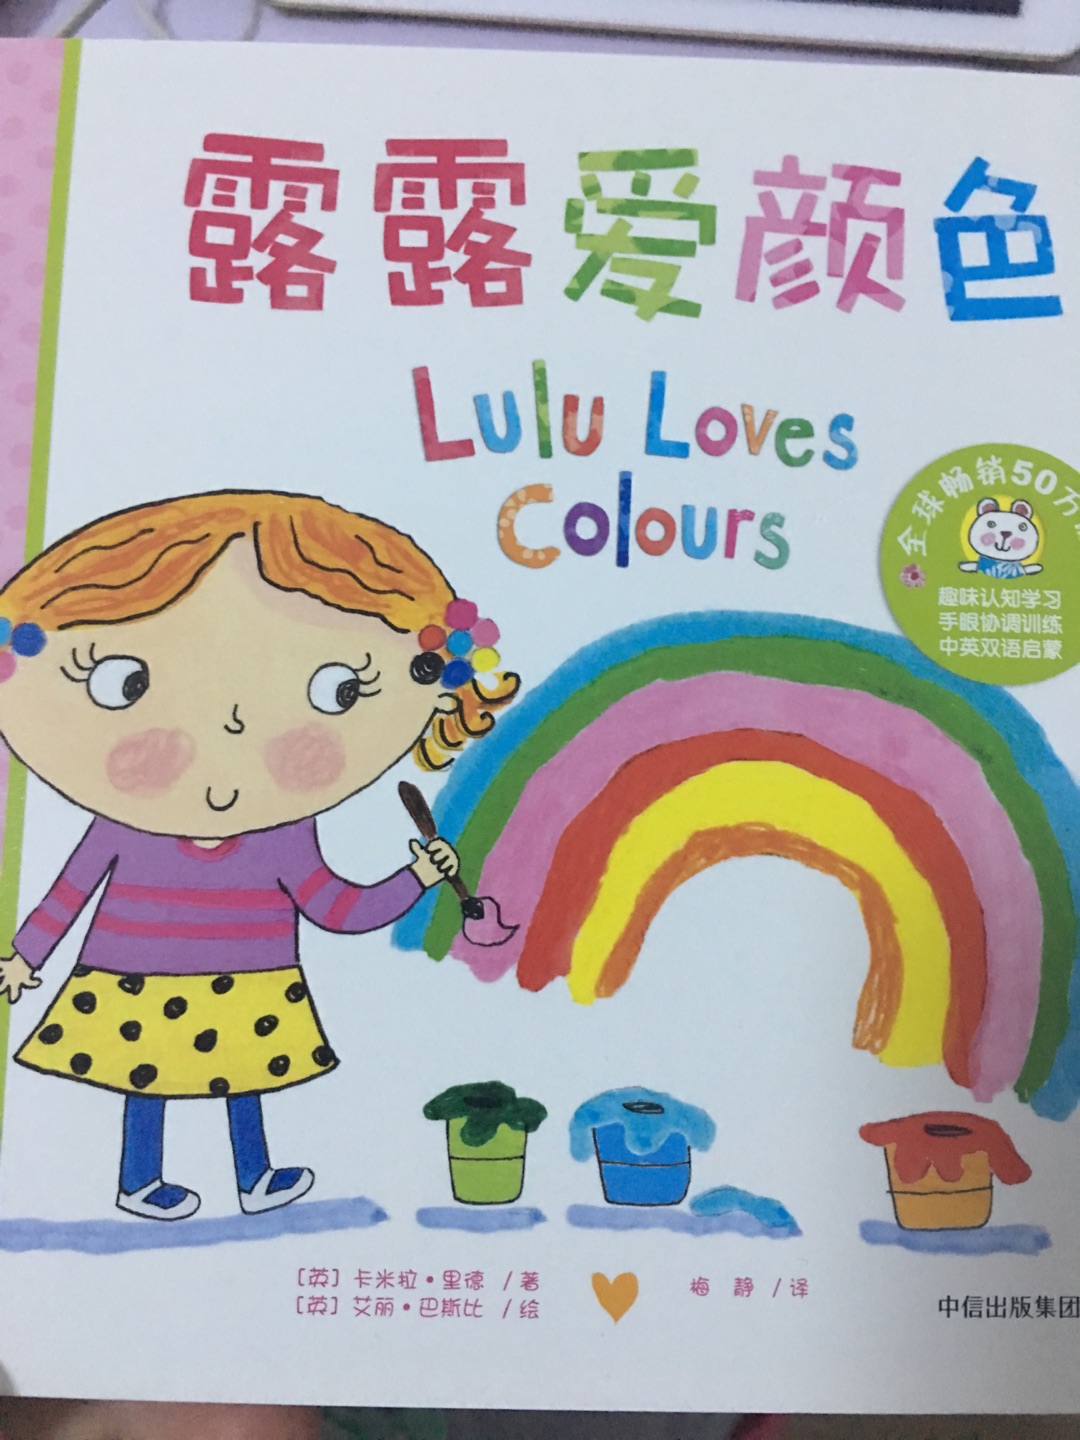 露露爱颜色，是为了给孩子分辨颜色而买的，打开书本，质量很好，带有中英文版的故事。